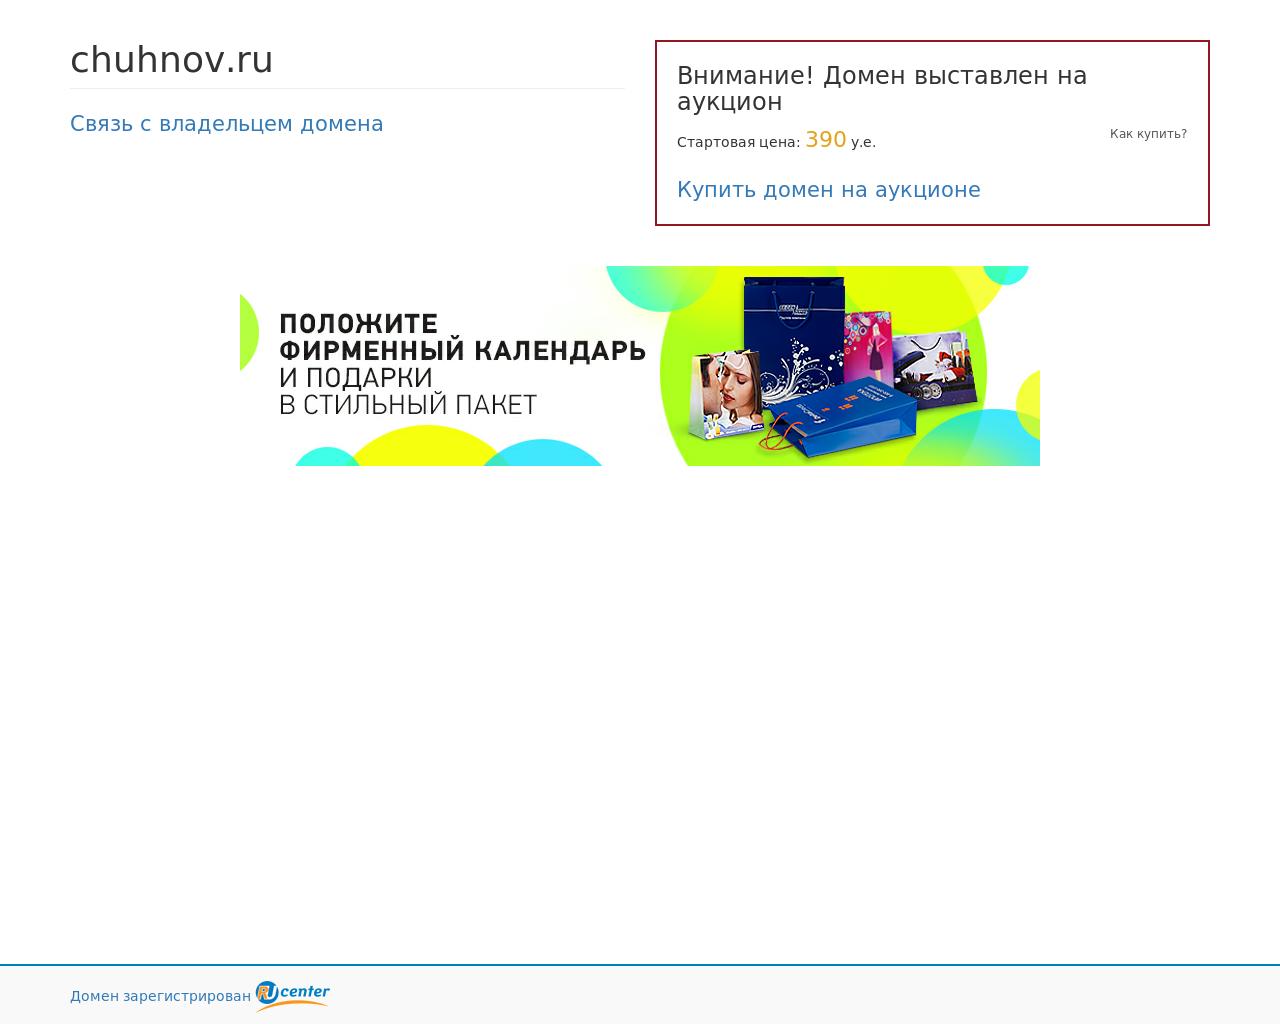 Изображение сайта chuhnov.ru в разрешении 1280x1024